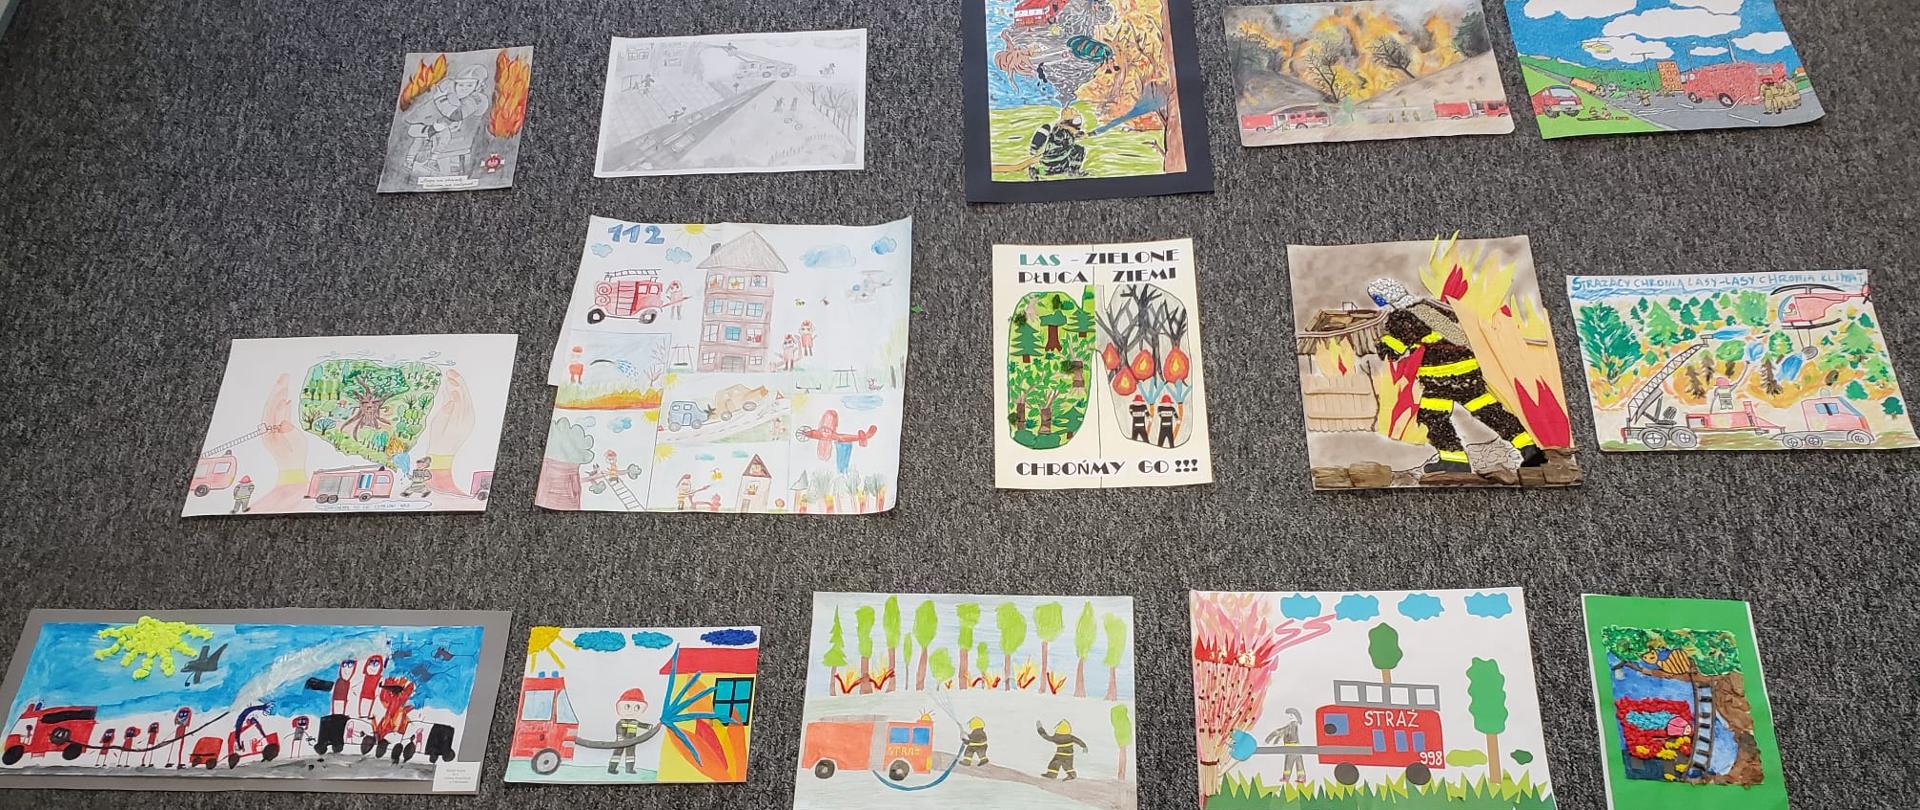 Zdjęcie przedstawia prace plastyczne namalowane przez dzieci na konkurs plastyczny, prace są położone na podłodze koloru szarego.